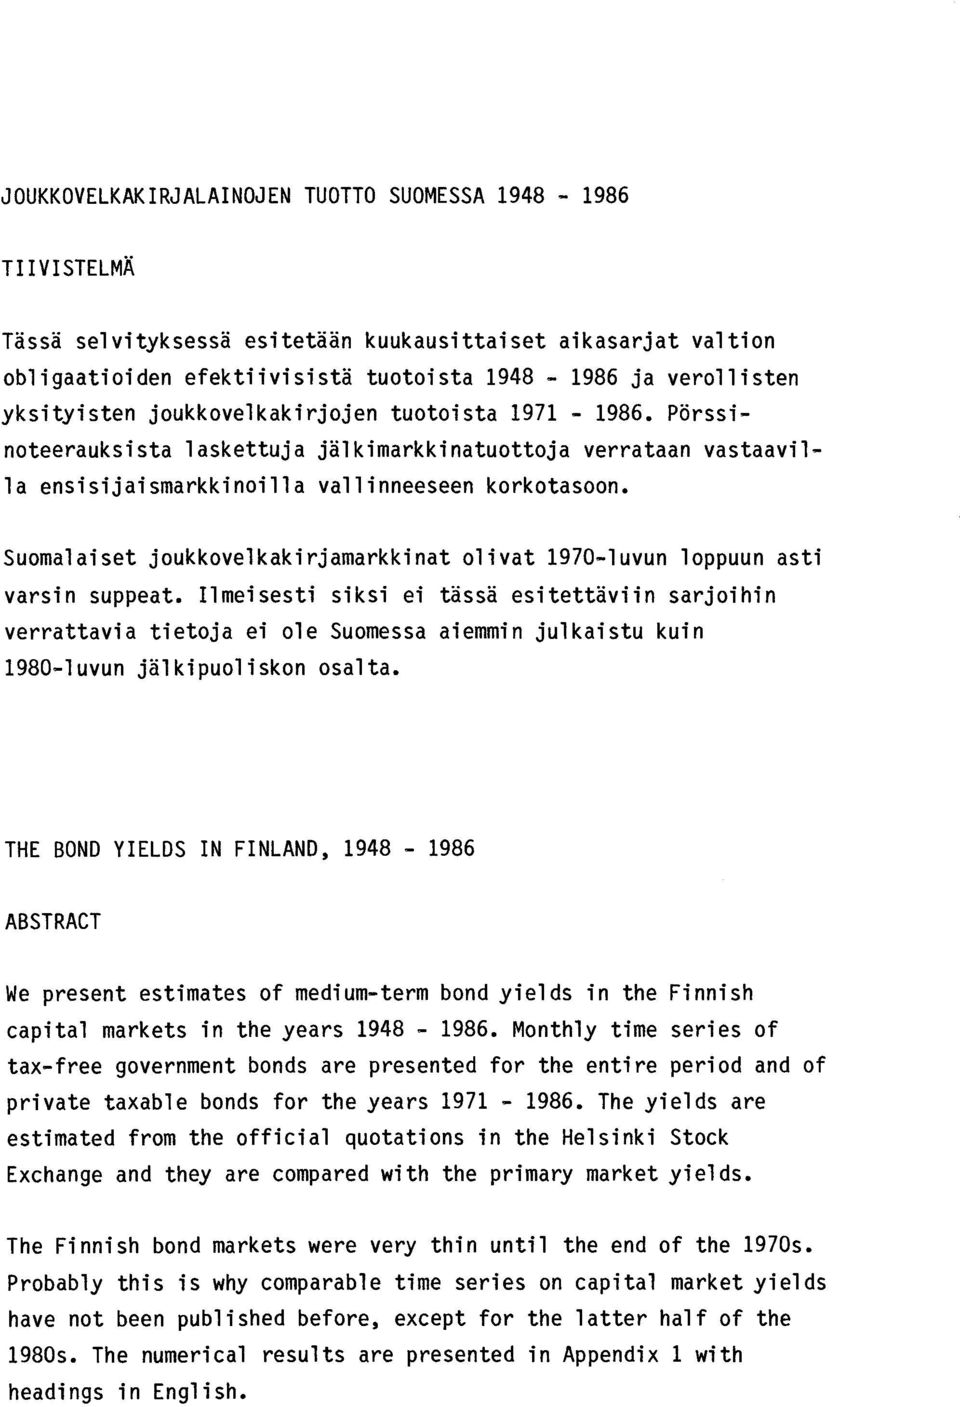 Suomalaiset joukkovelkakirjamarkkinat olivat 1970-luvun loppuun asti varsin suppeat.